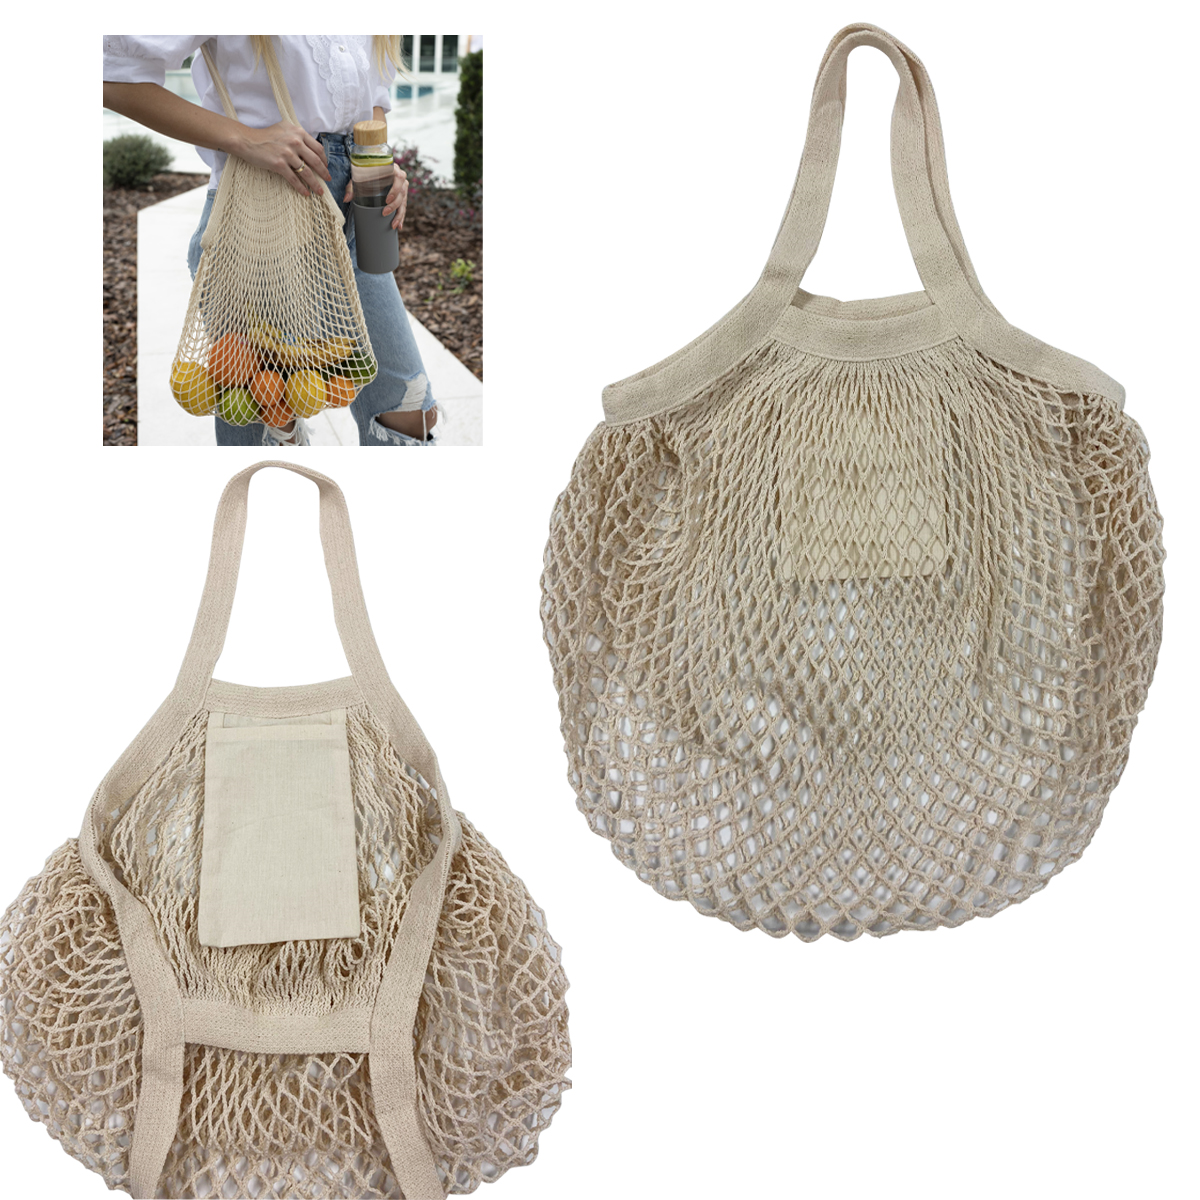 Wholesale Cotton Canvas Mesh Market Tote Bags in Bulk